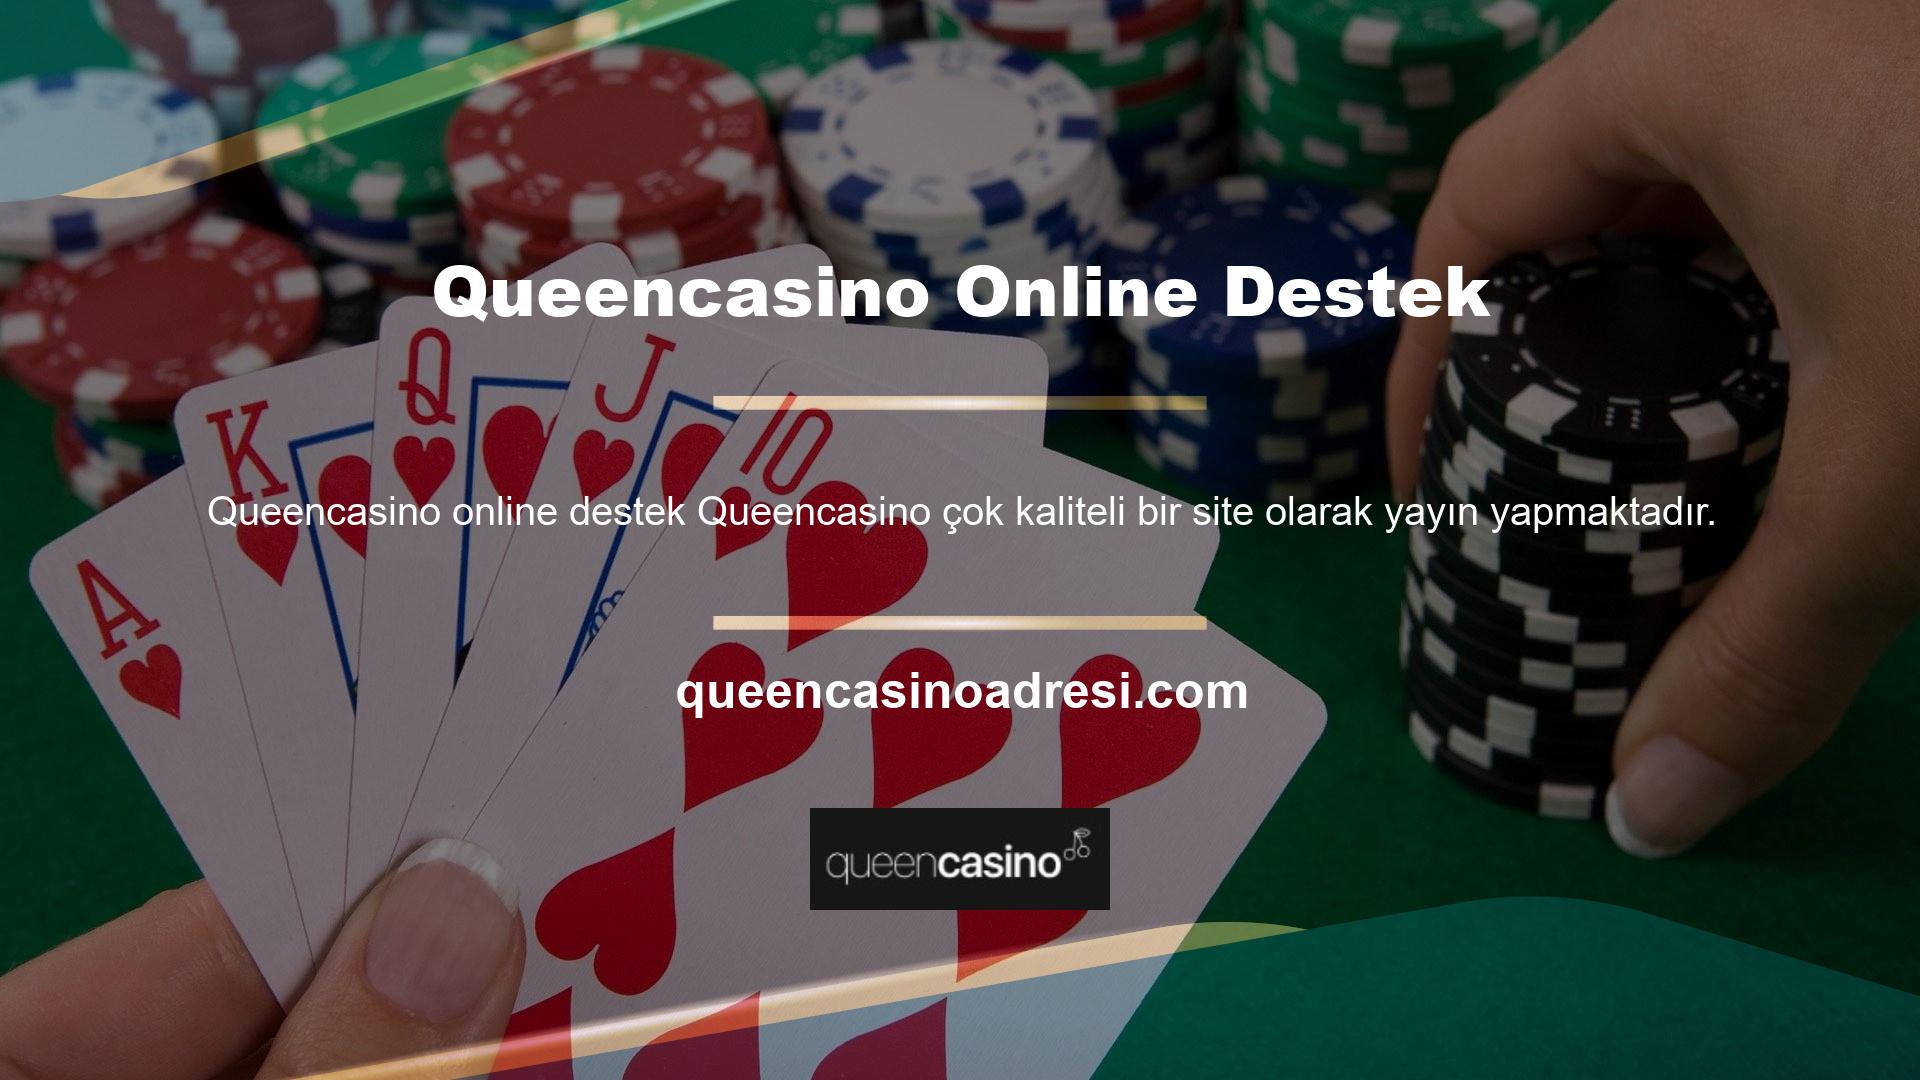 Queencasino online destek